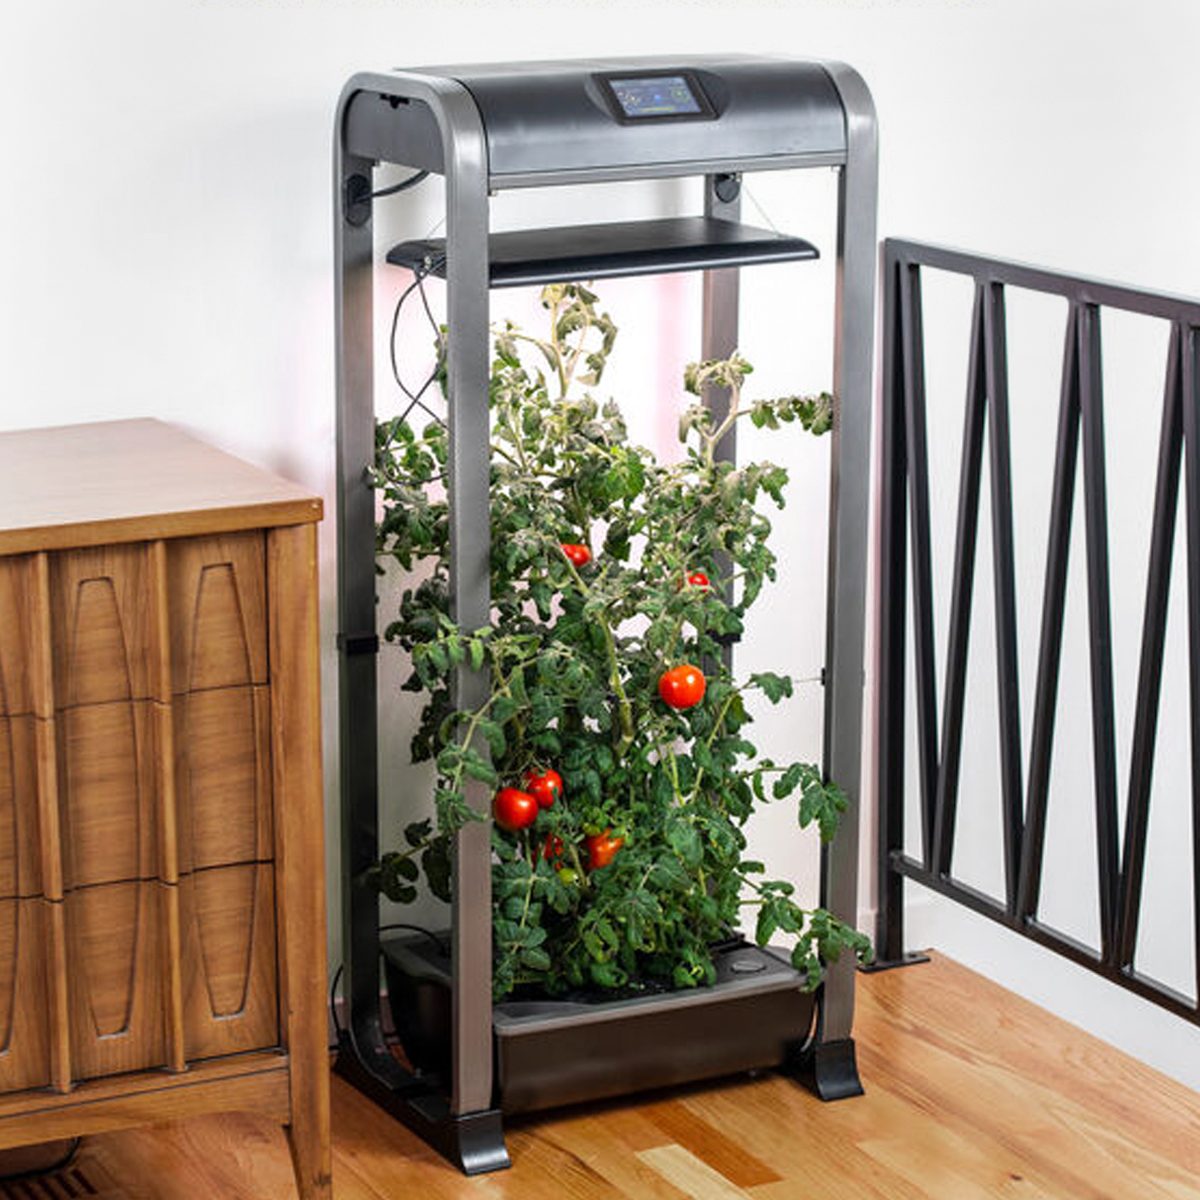 Top 5 Indoor Gardening Kits and Vegetable Growing Essentials